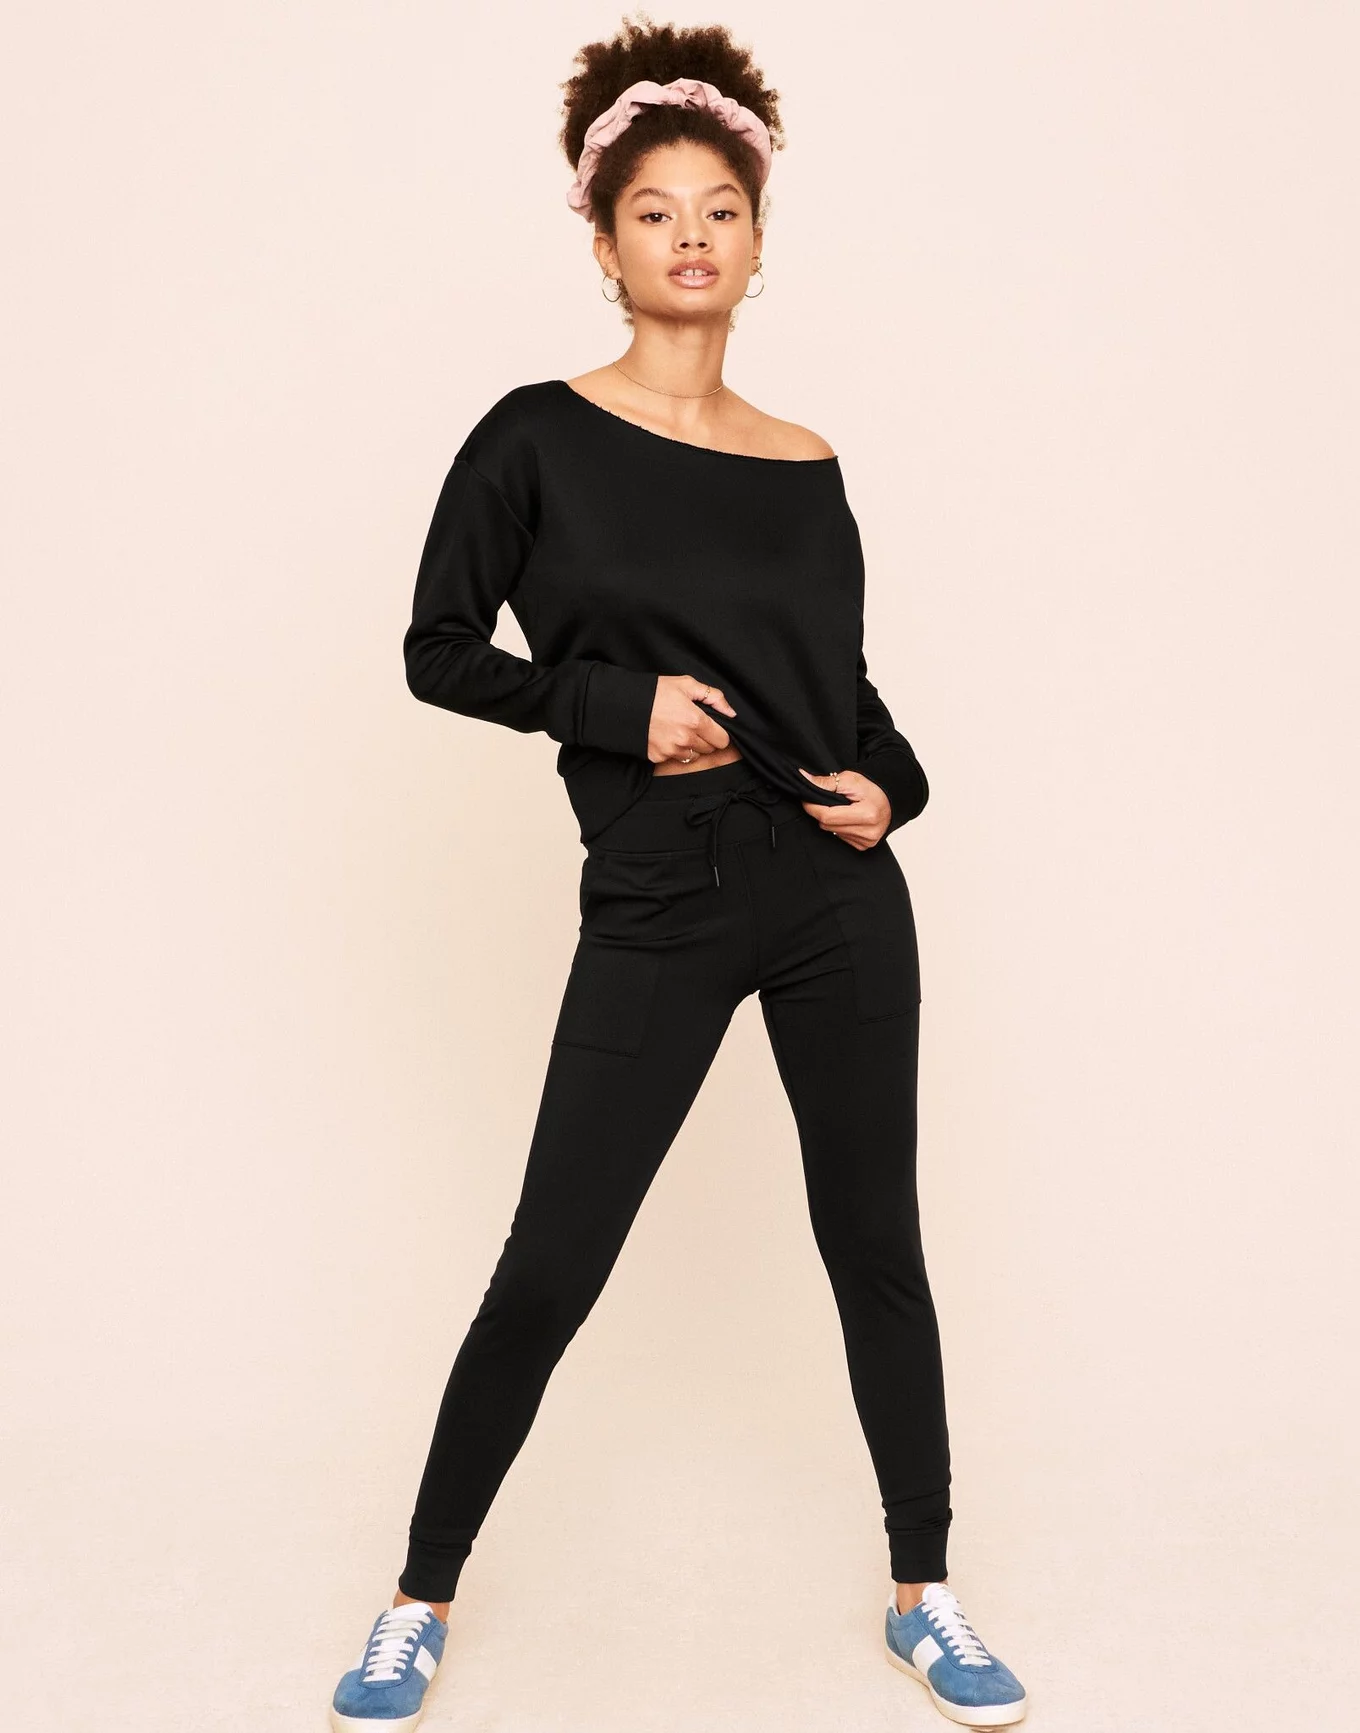 Jenesis Fitted Legging Black Full length fitted legging, XXS-XL